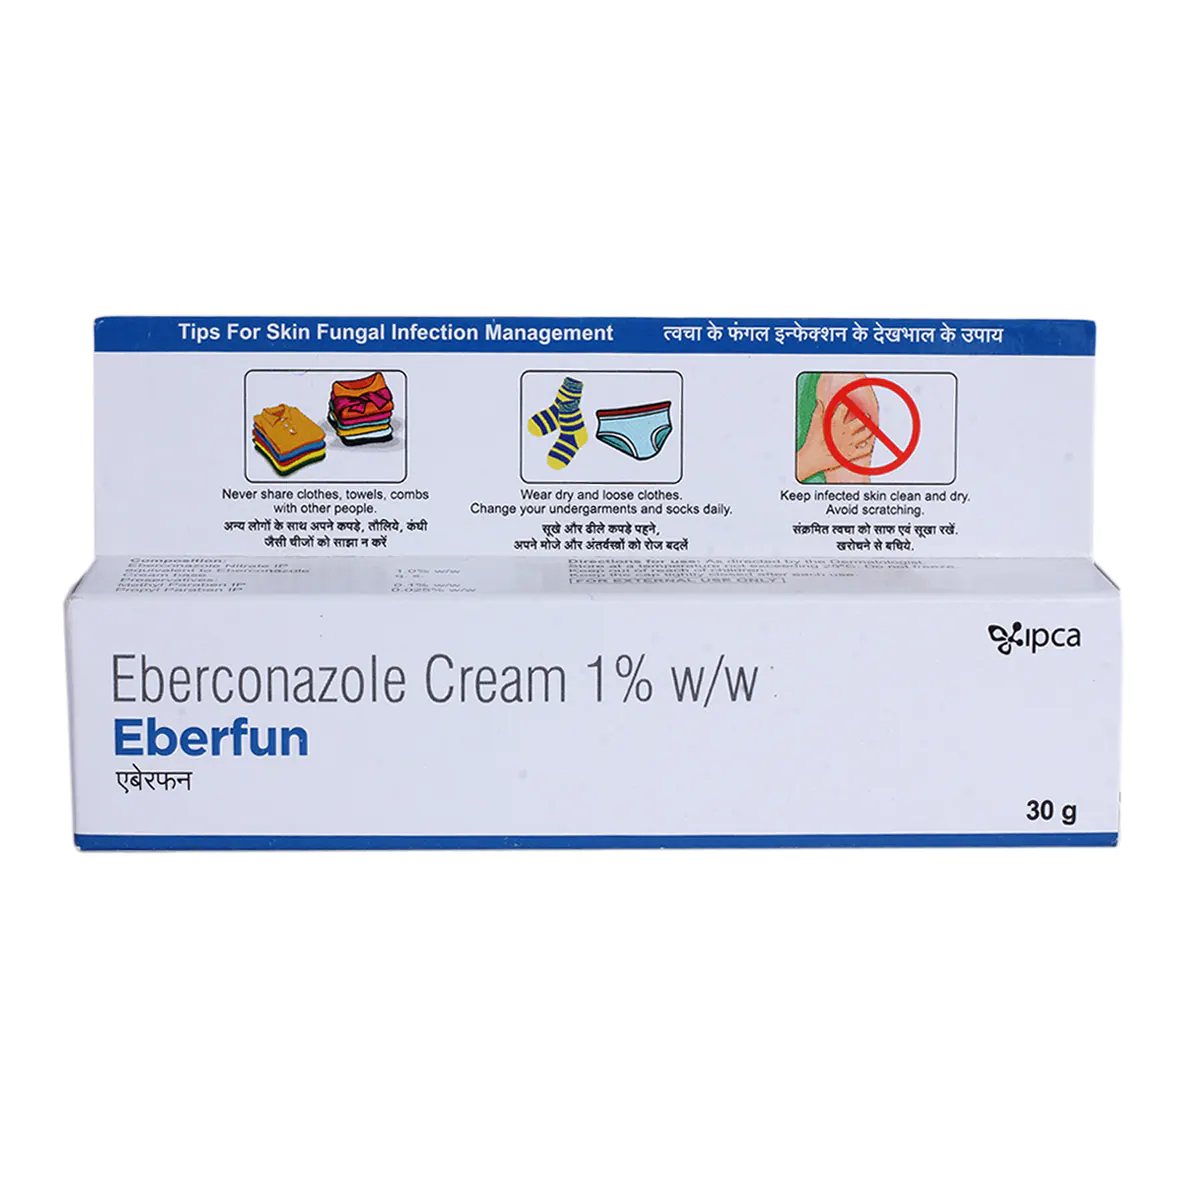 Eberfun cream